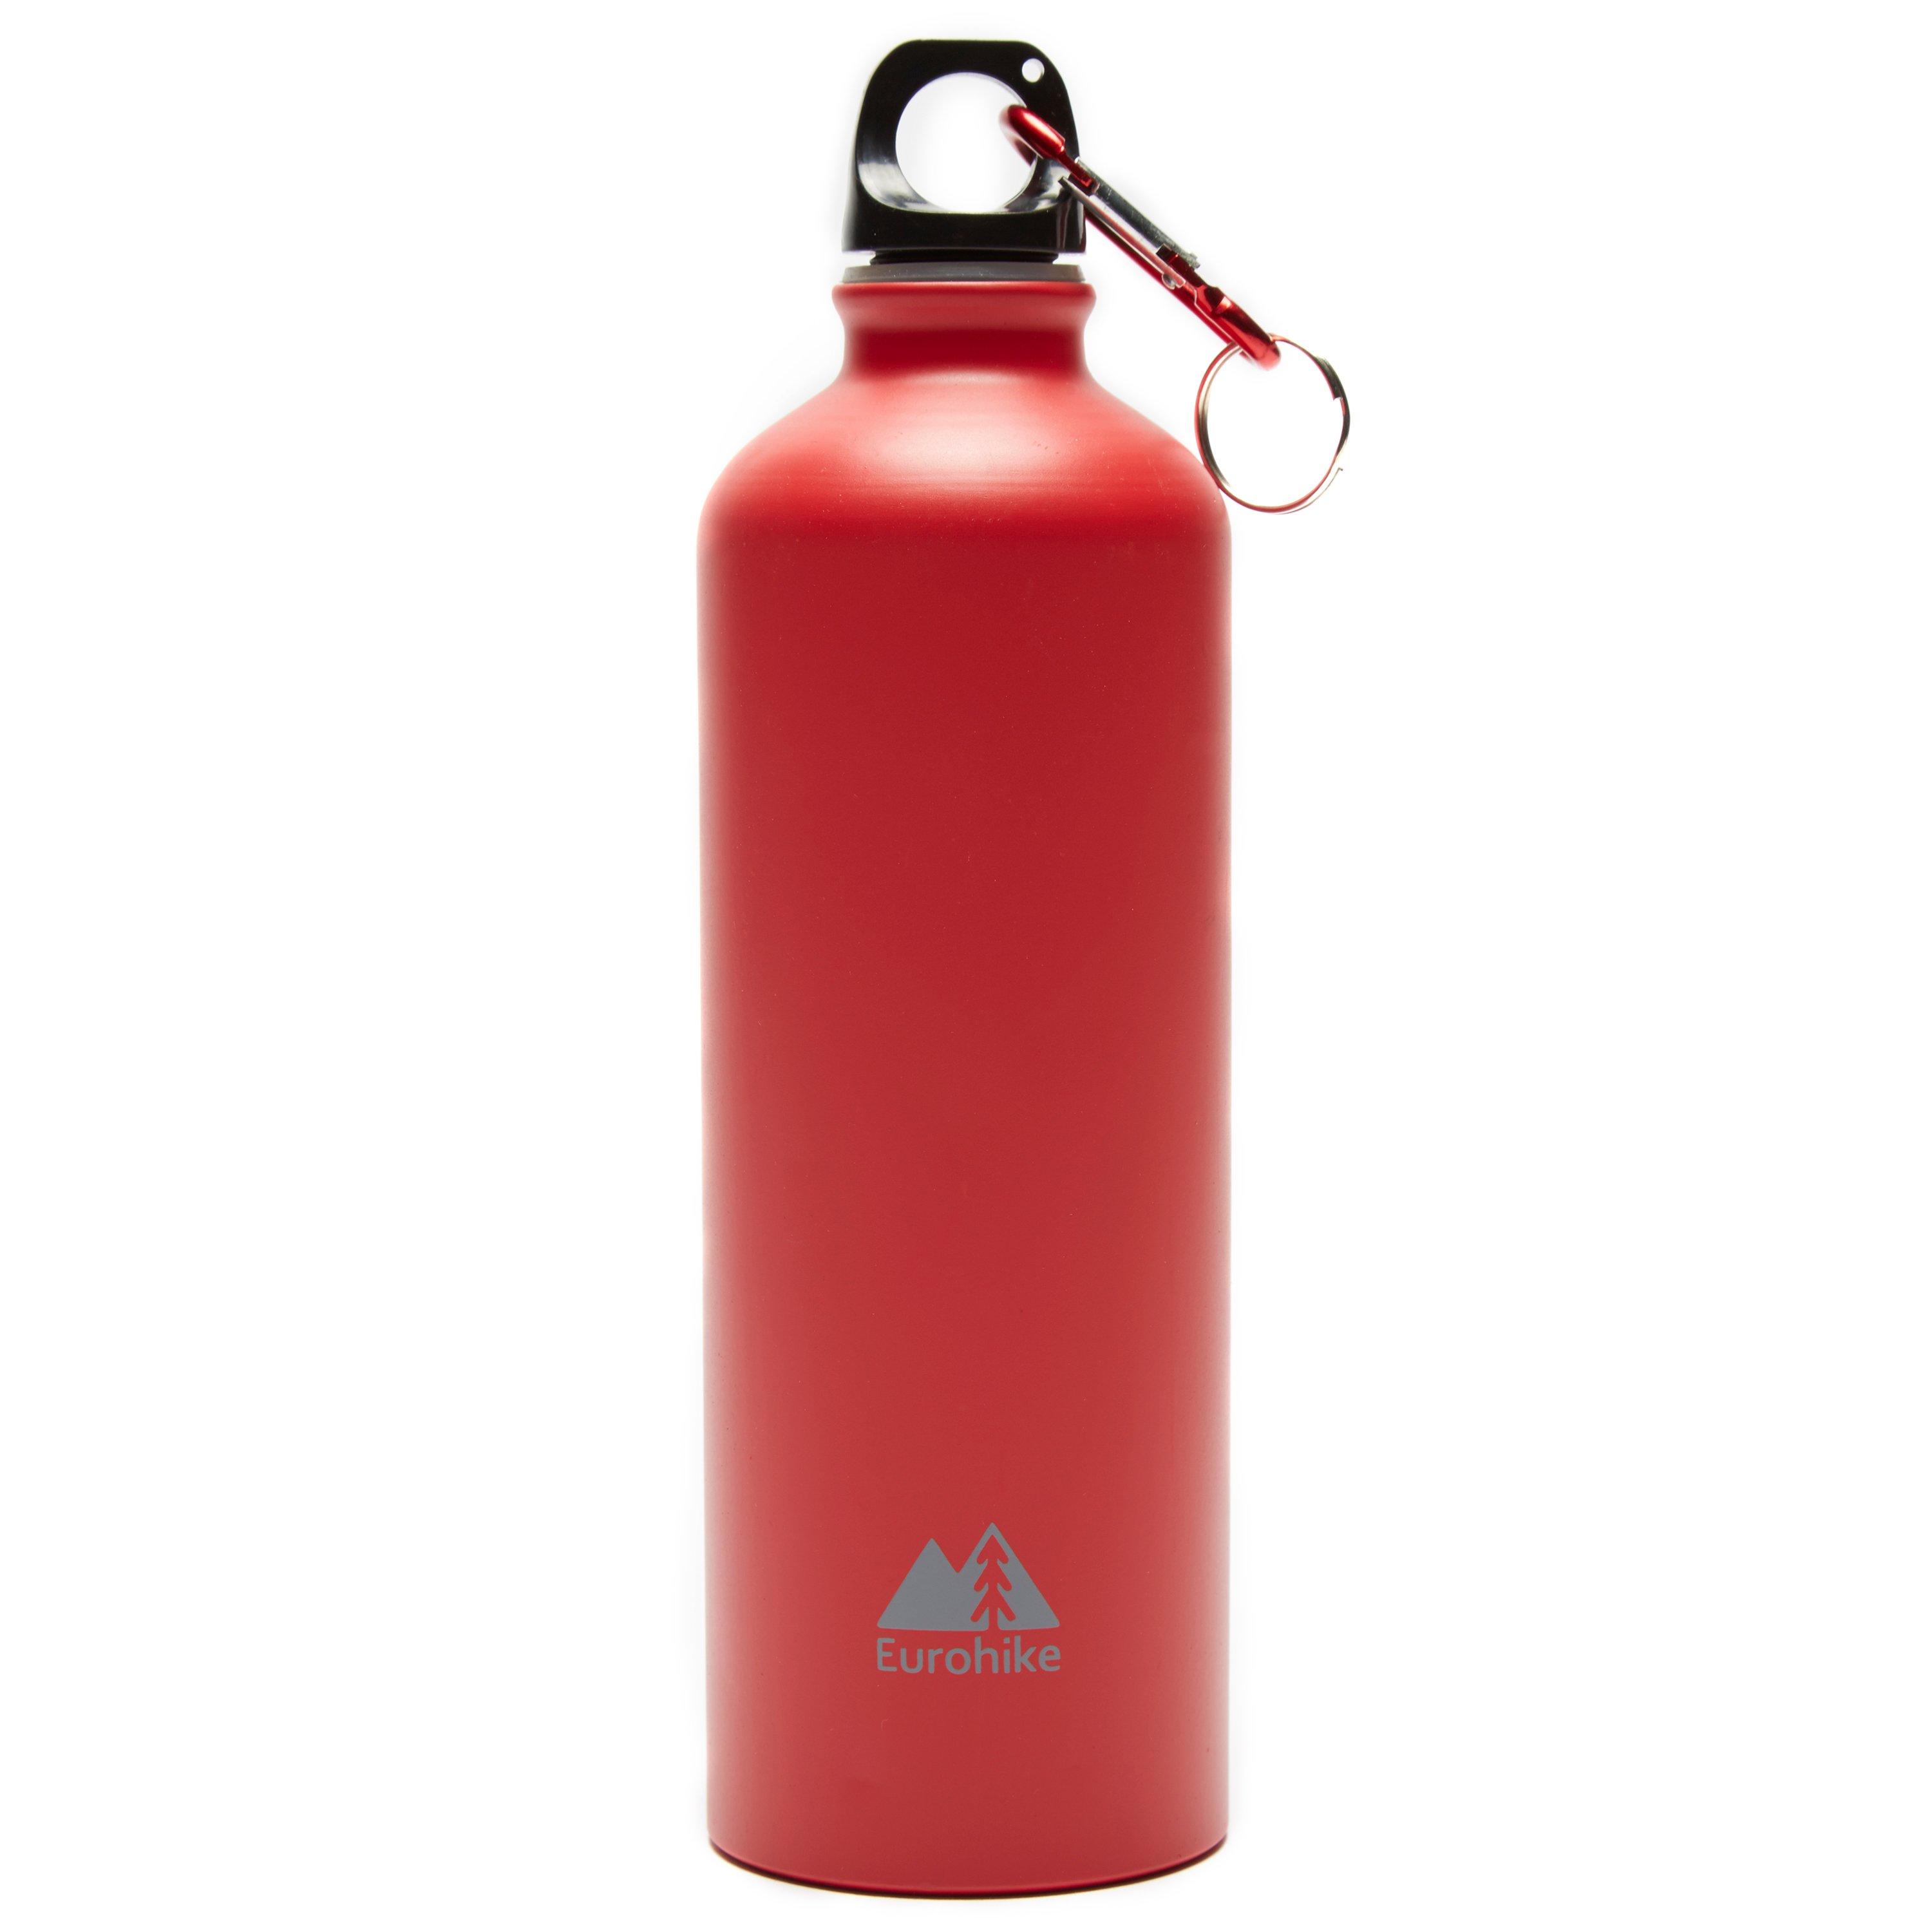 Aqua 0.75L Aluminium Water Bottle - Red, Red